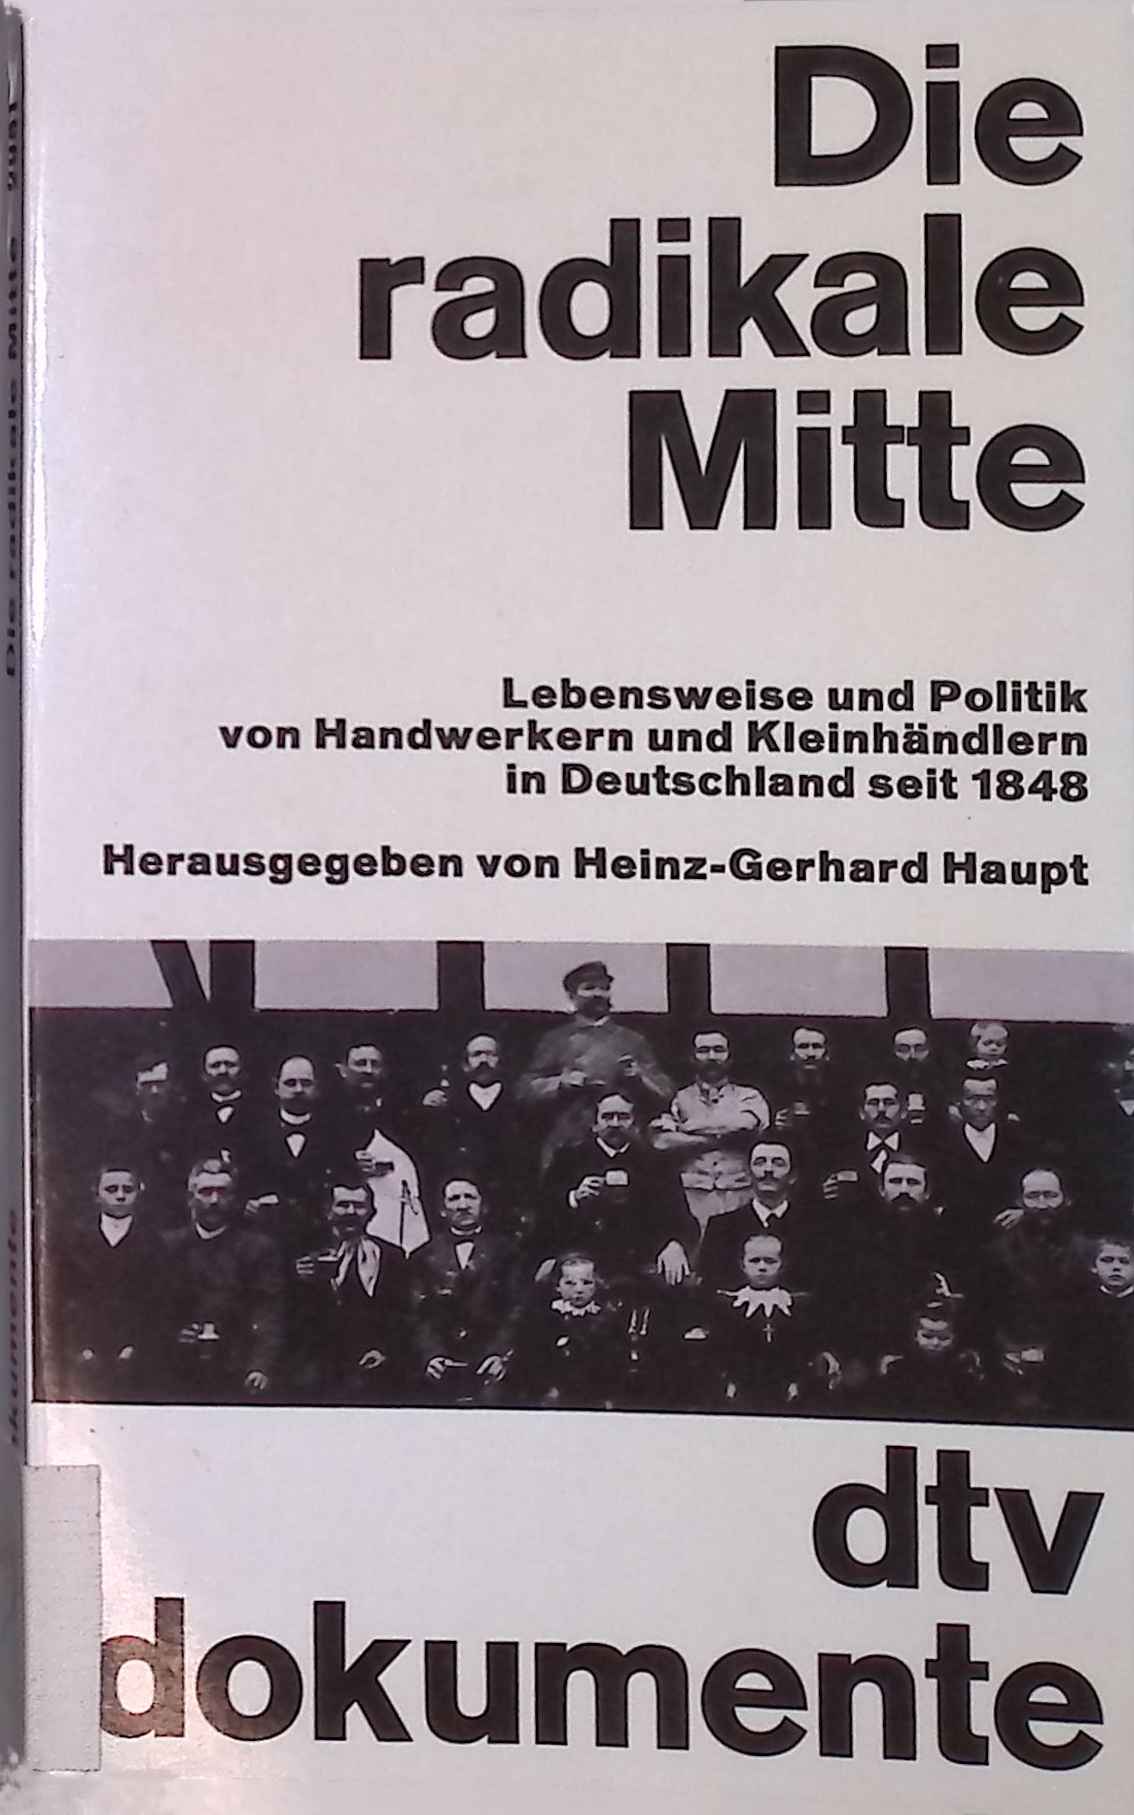 Die radikale Mitte. Lebensweise und Politik von Handwerkern und Kleinhändlern in Deutschland seit 1848. dtv 2951 - Haupt, Heinz-Gerhard